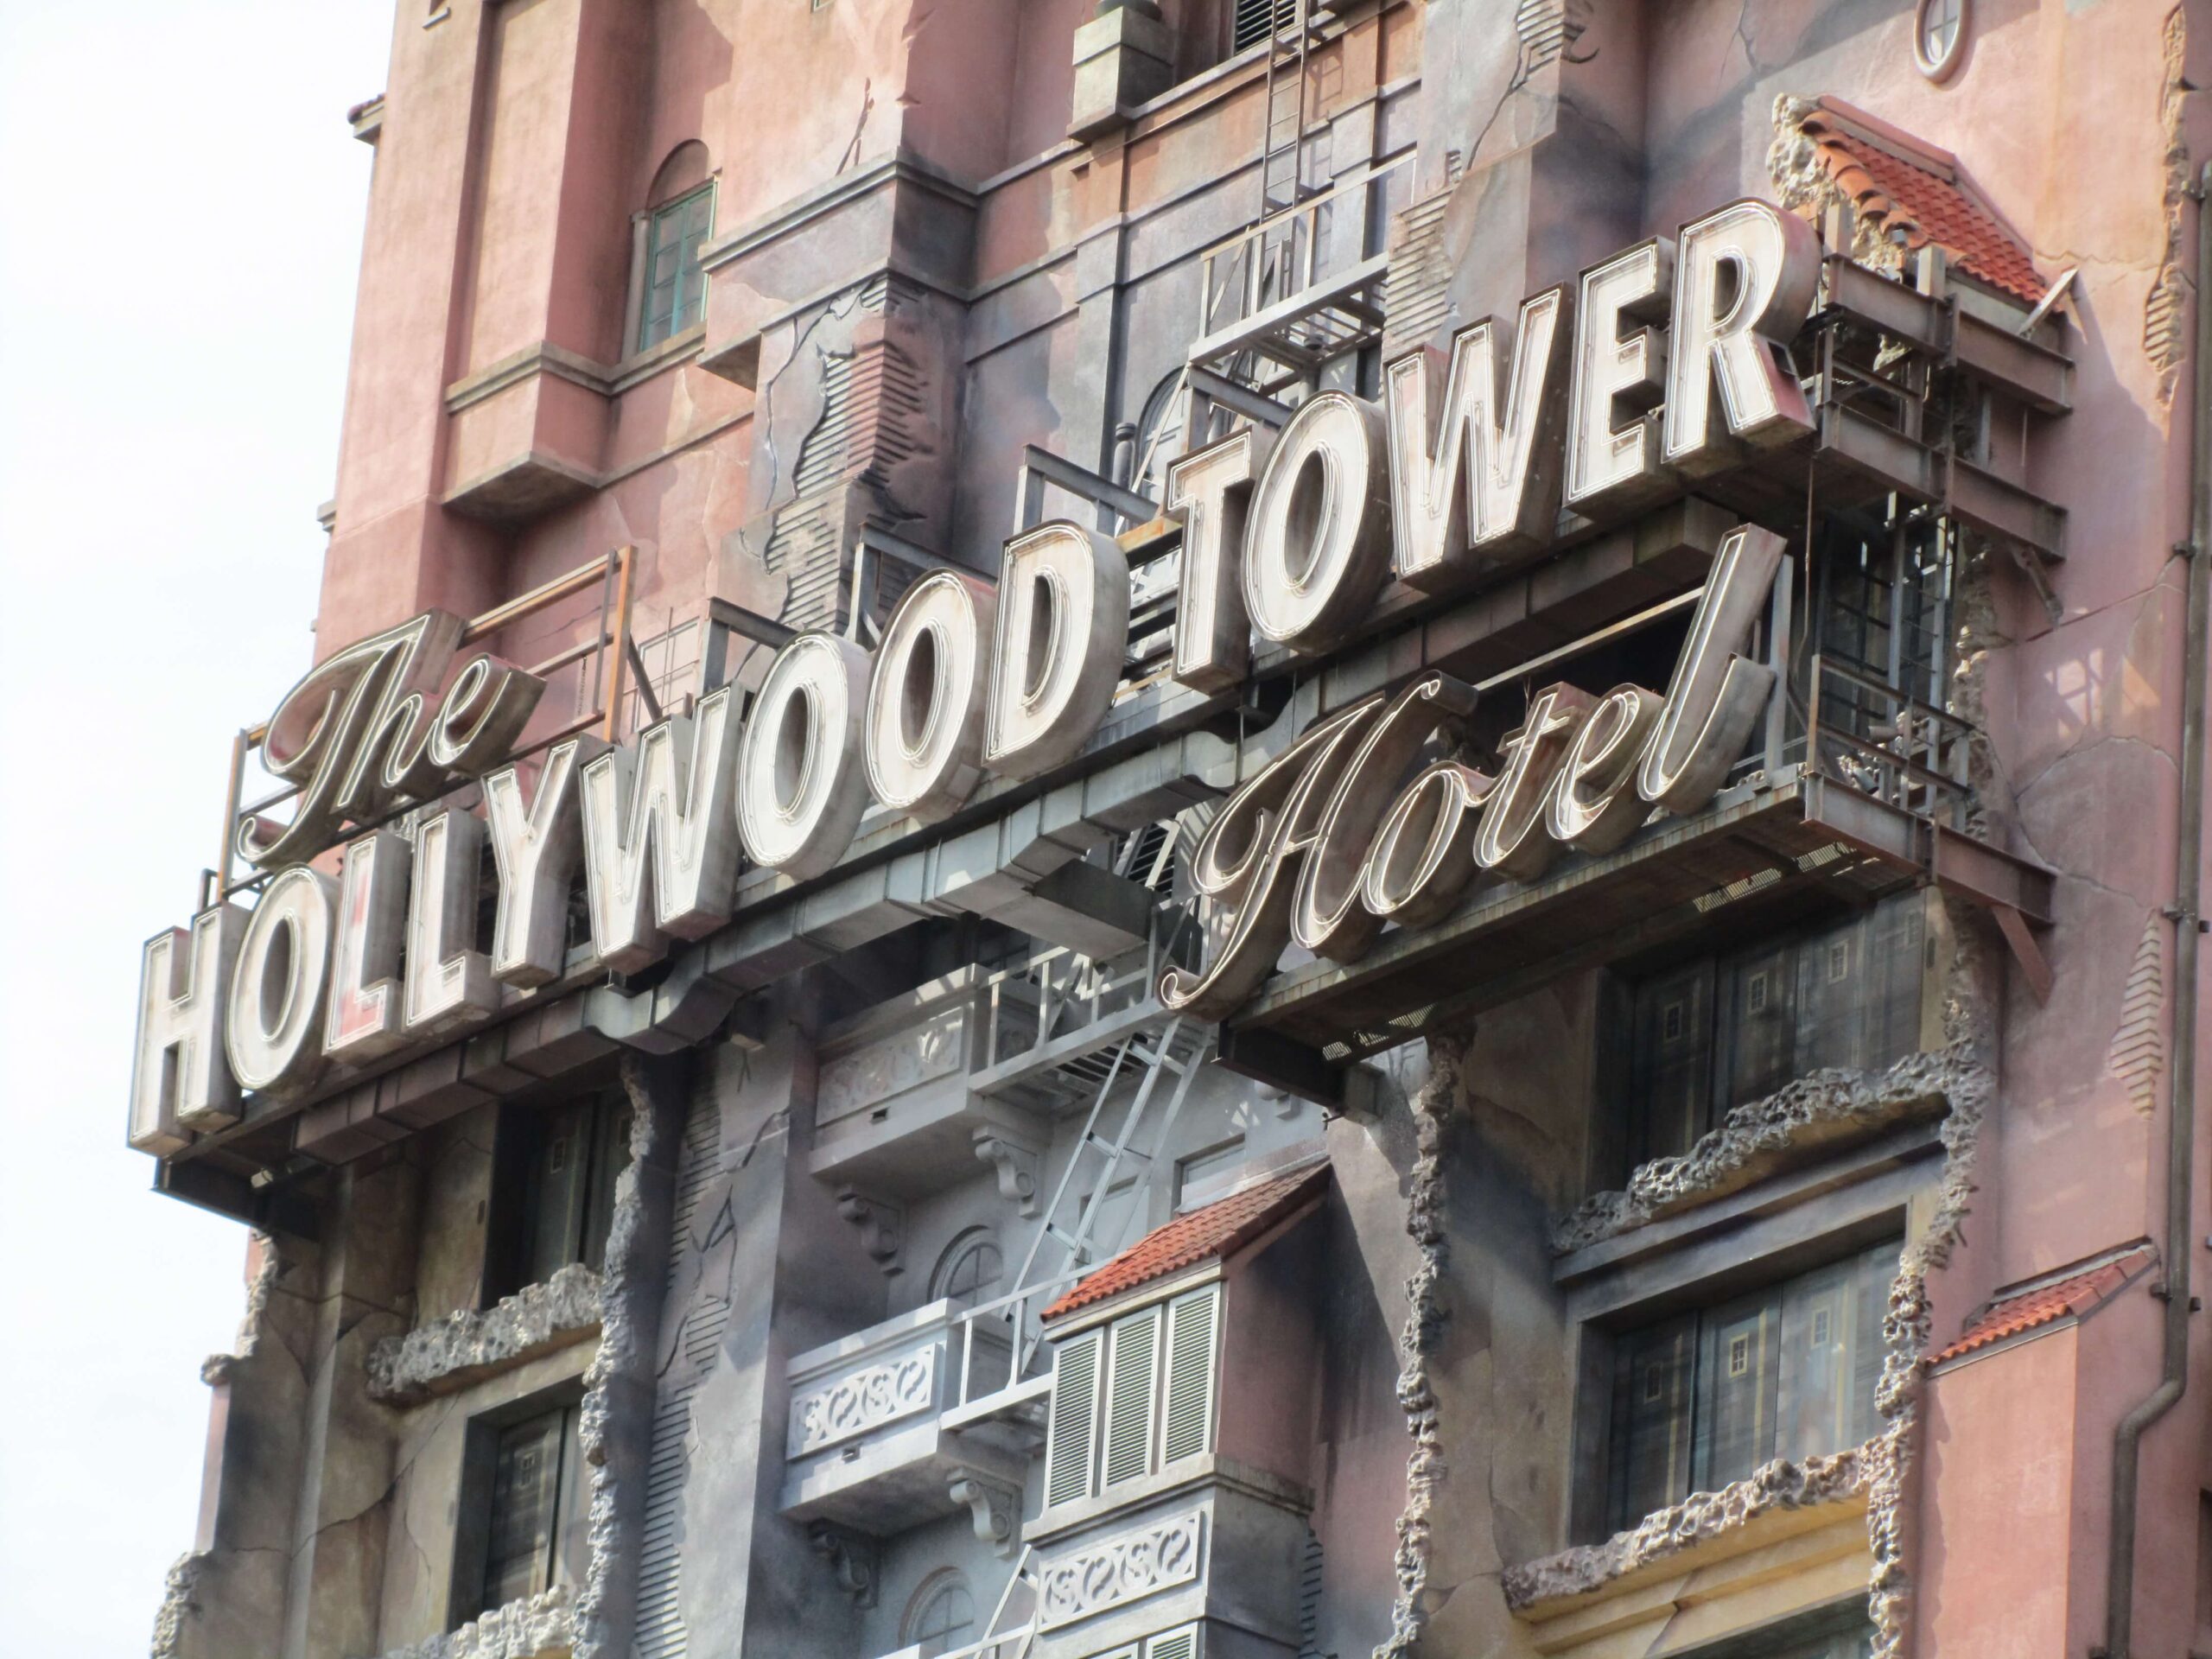 Atracción Tower of Terror en los Hollywood Studios